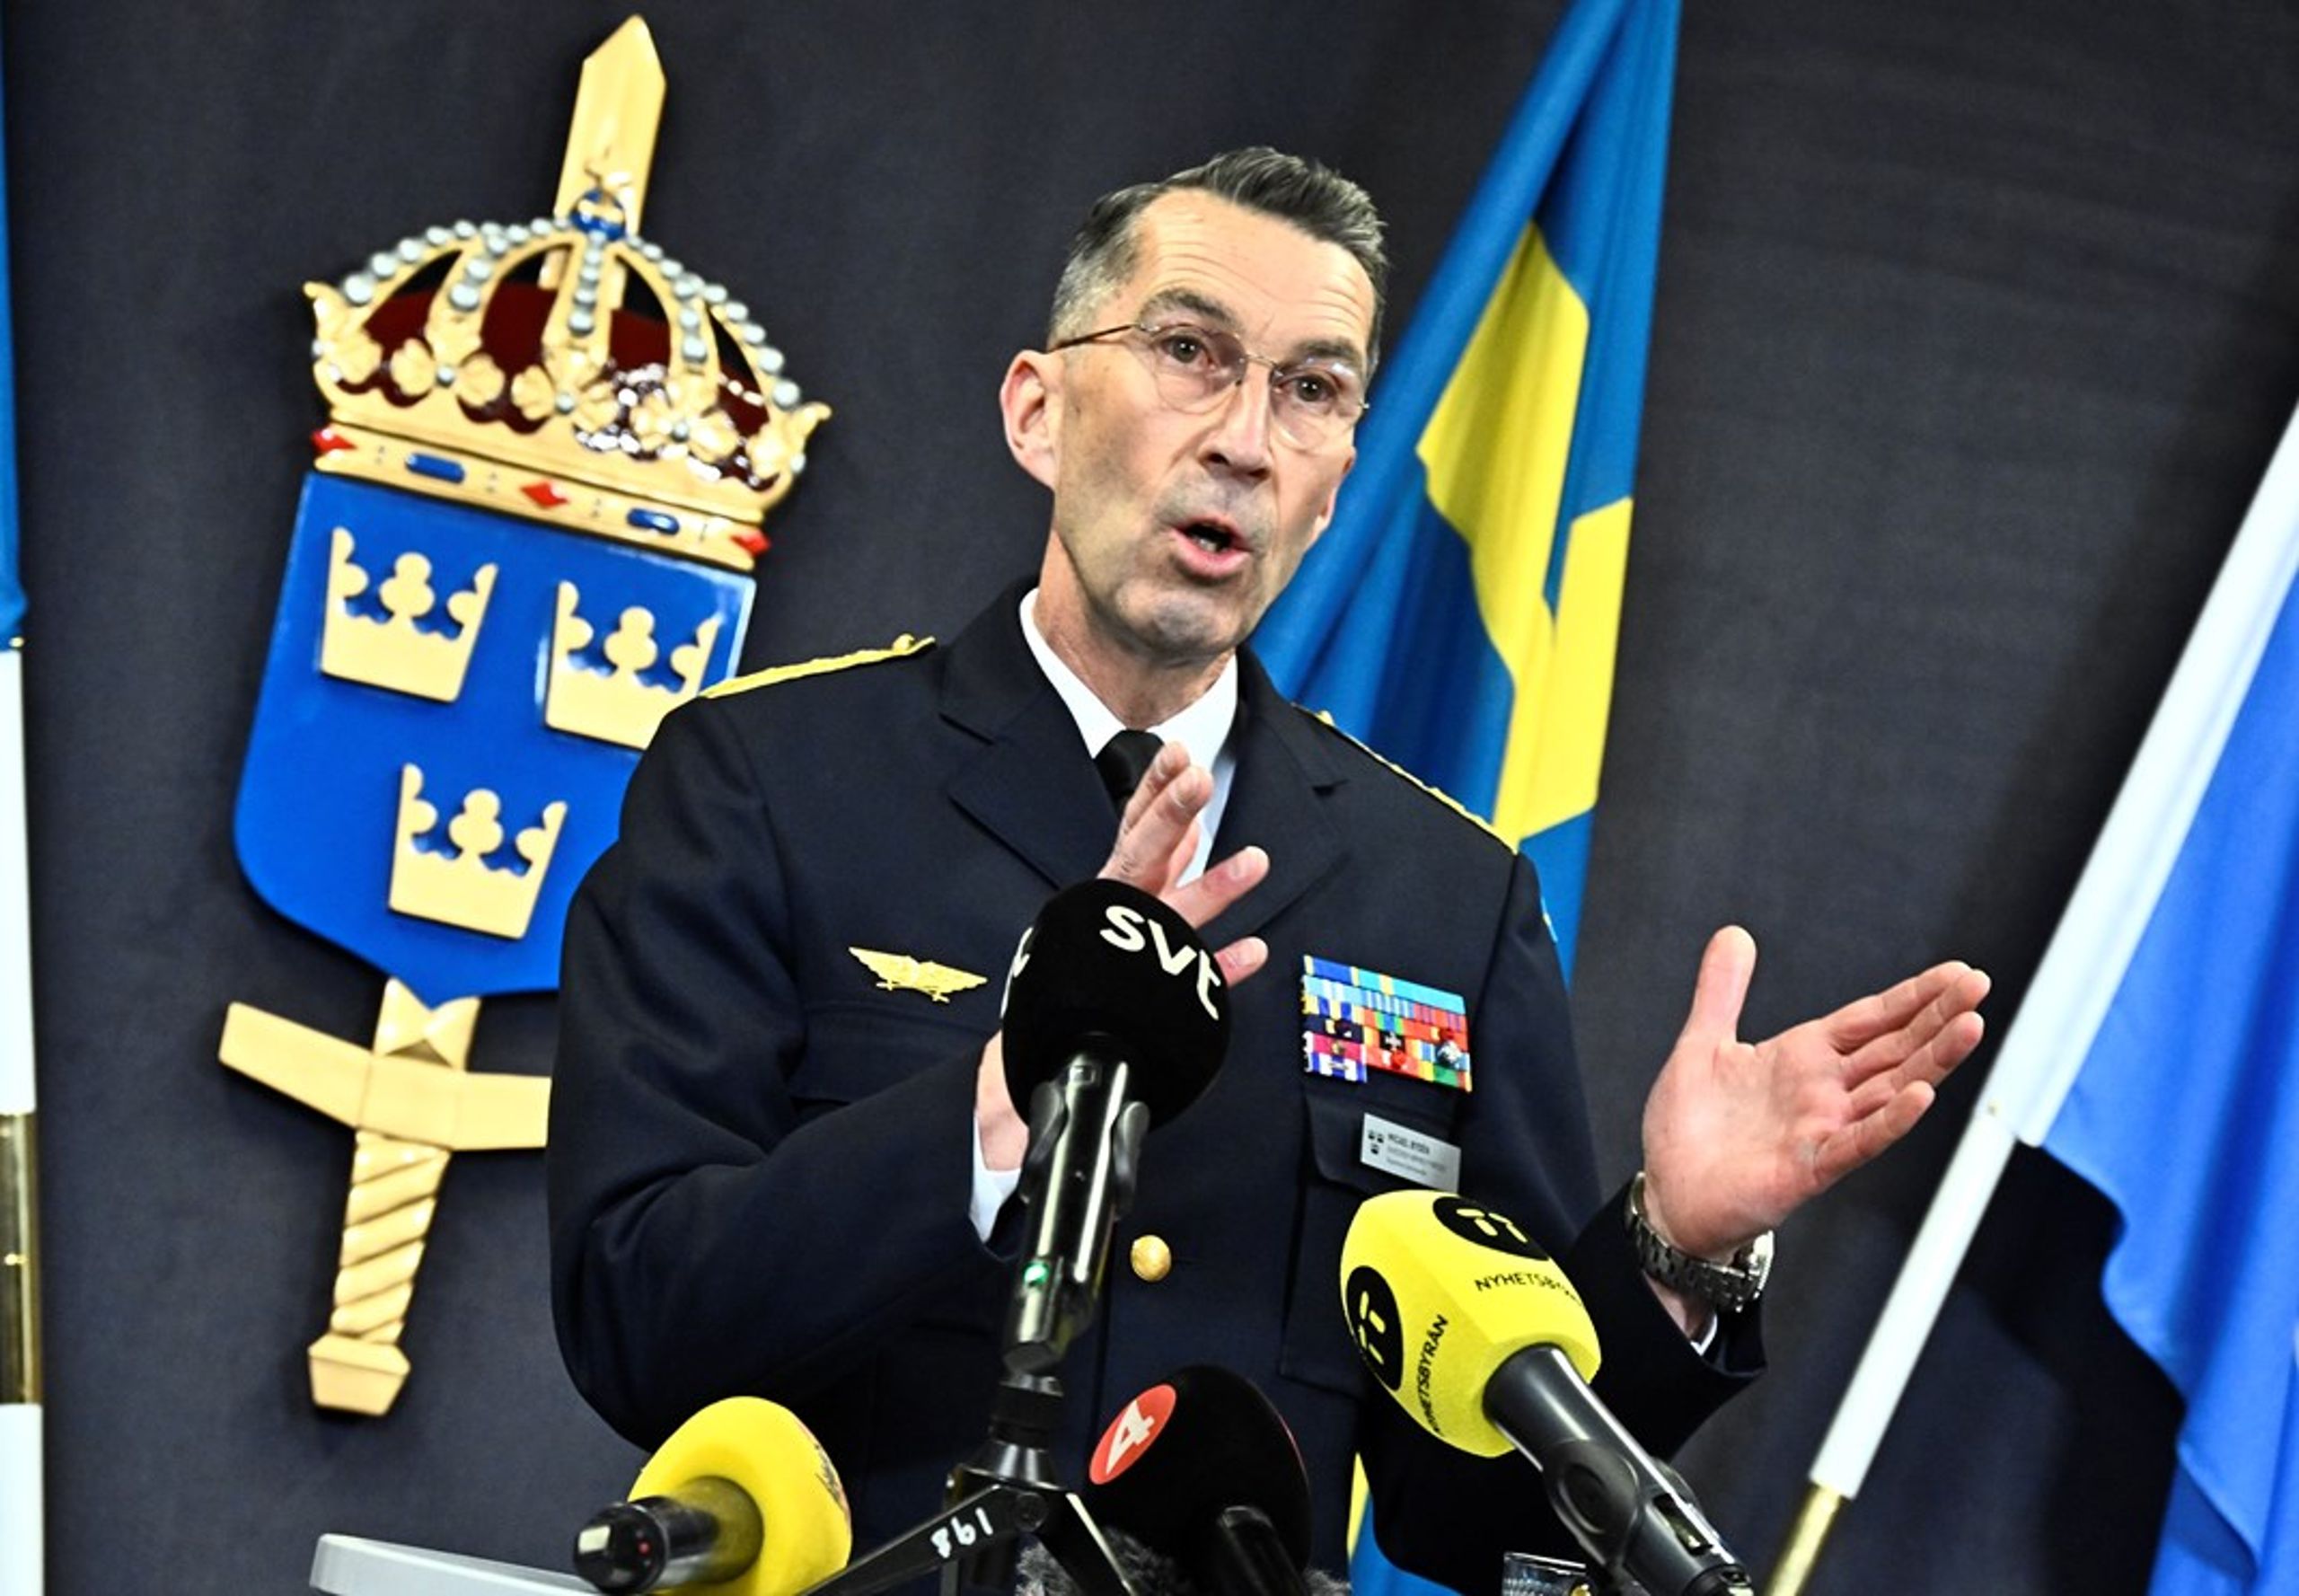 Försvarsmaktens överbefälhavare Micael Bydén toppar lönelistan bland myndighetscheferna inom försvarsområdet med en lön på 170 100 kronor.